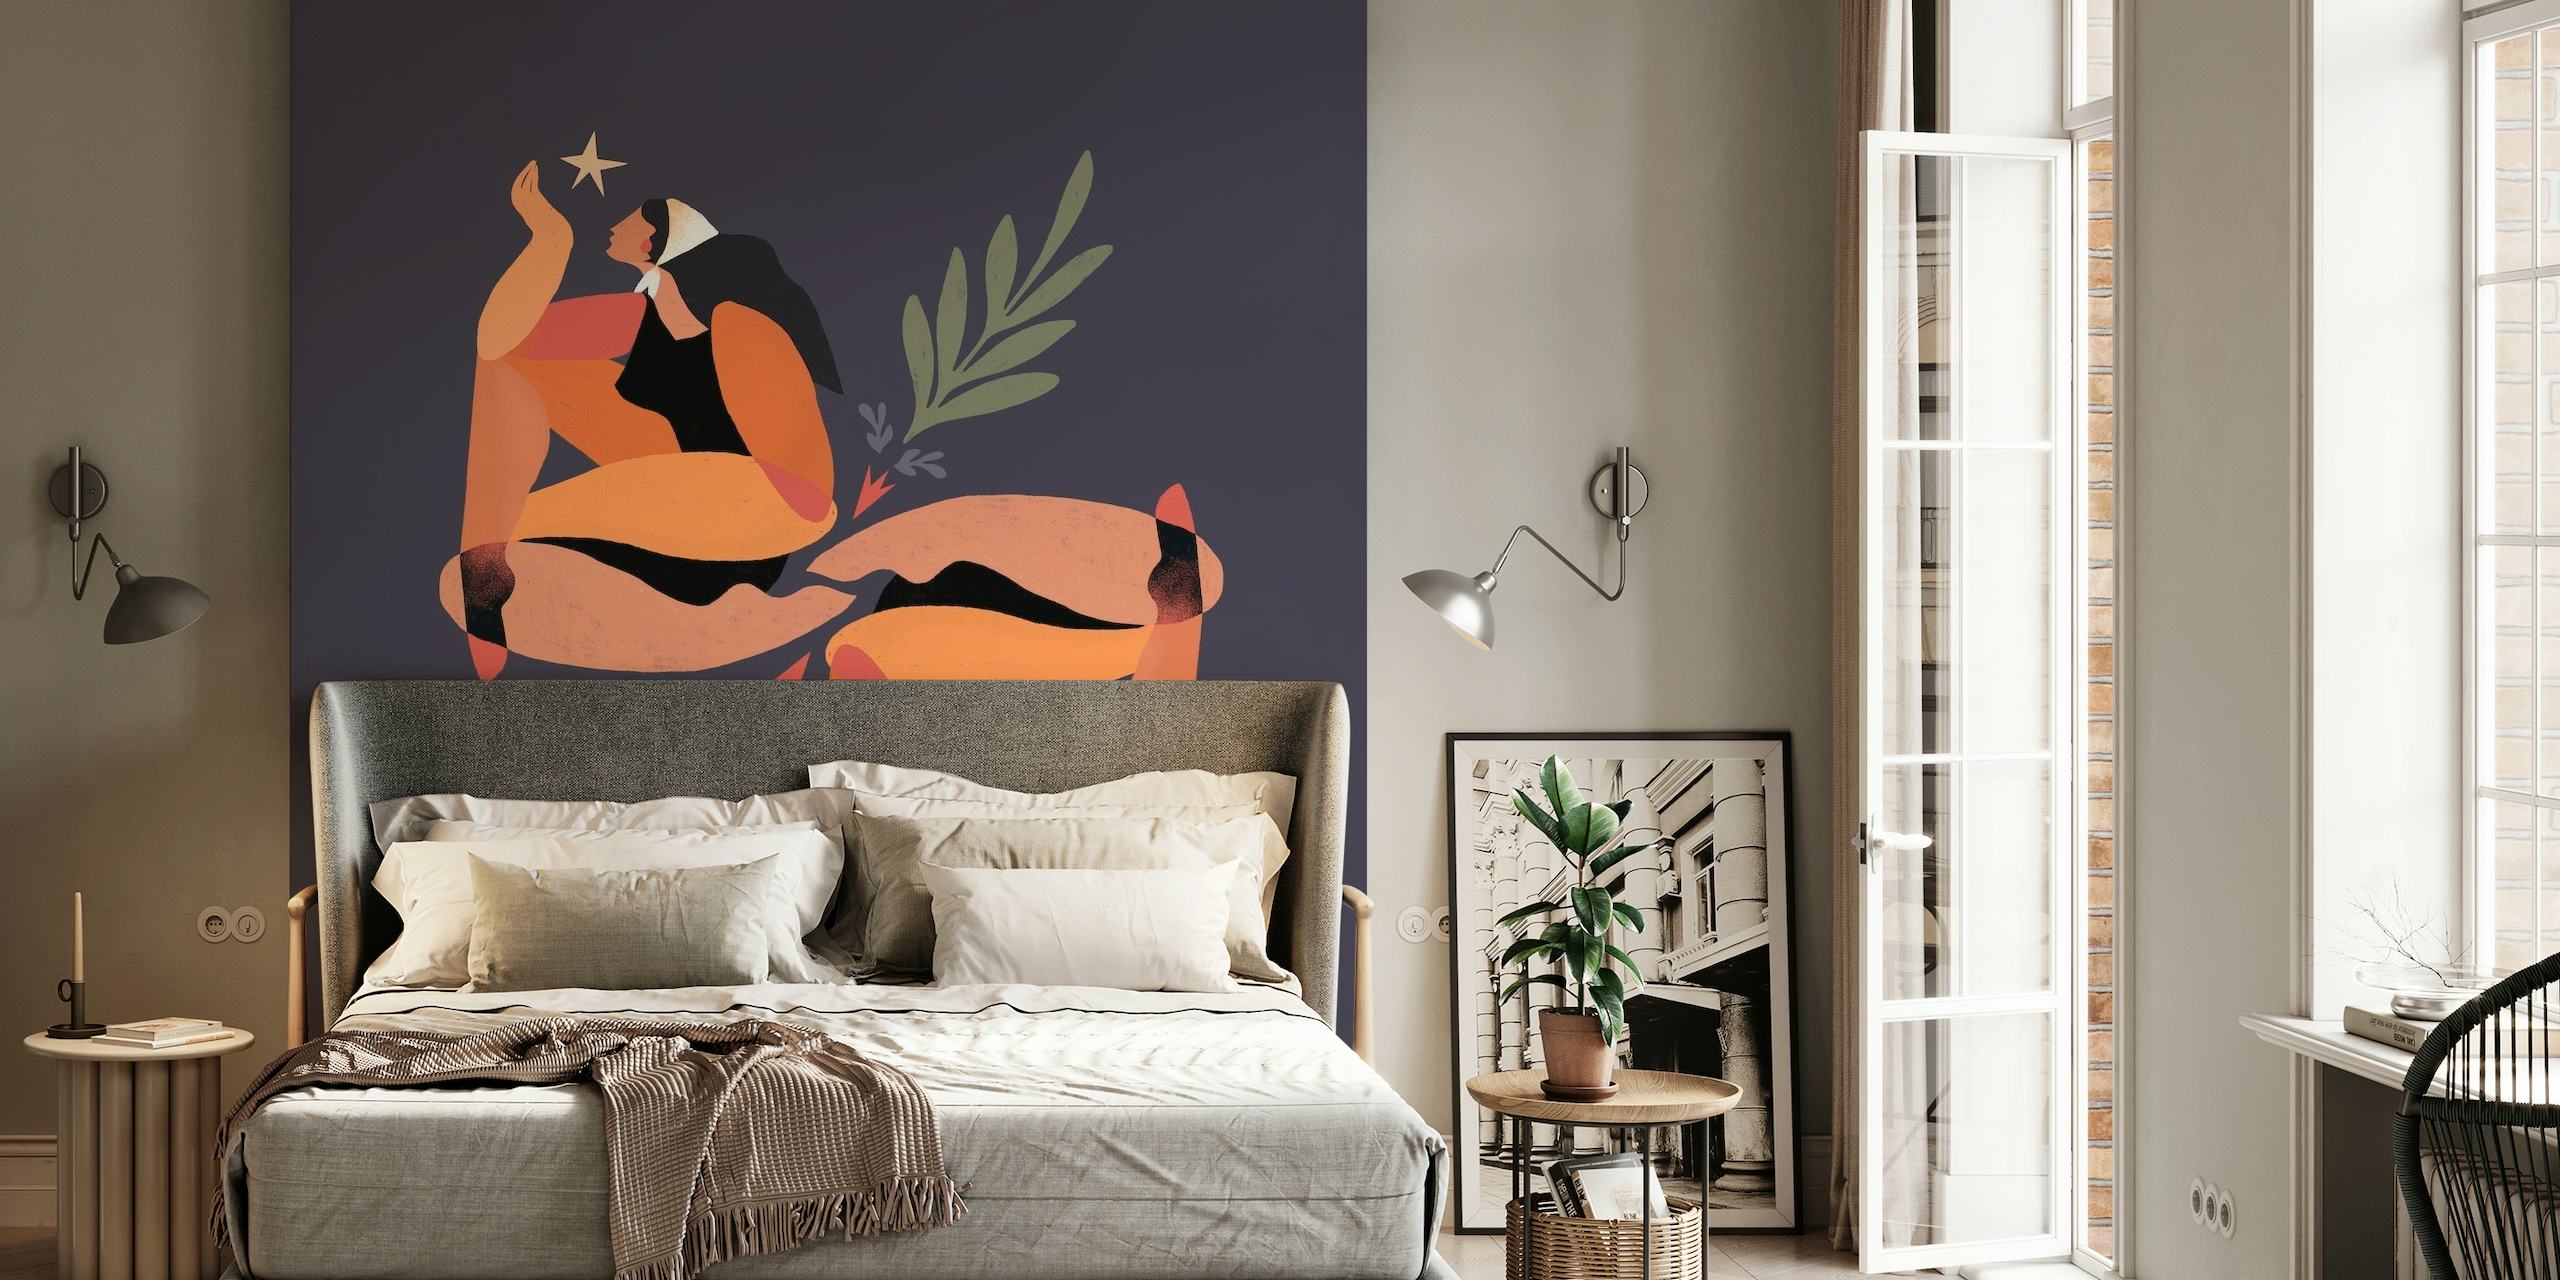 Mural abstracto de una mujer entrelazada con elementos botánicos en tonos tierra